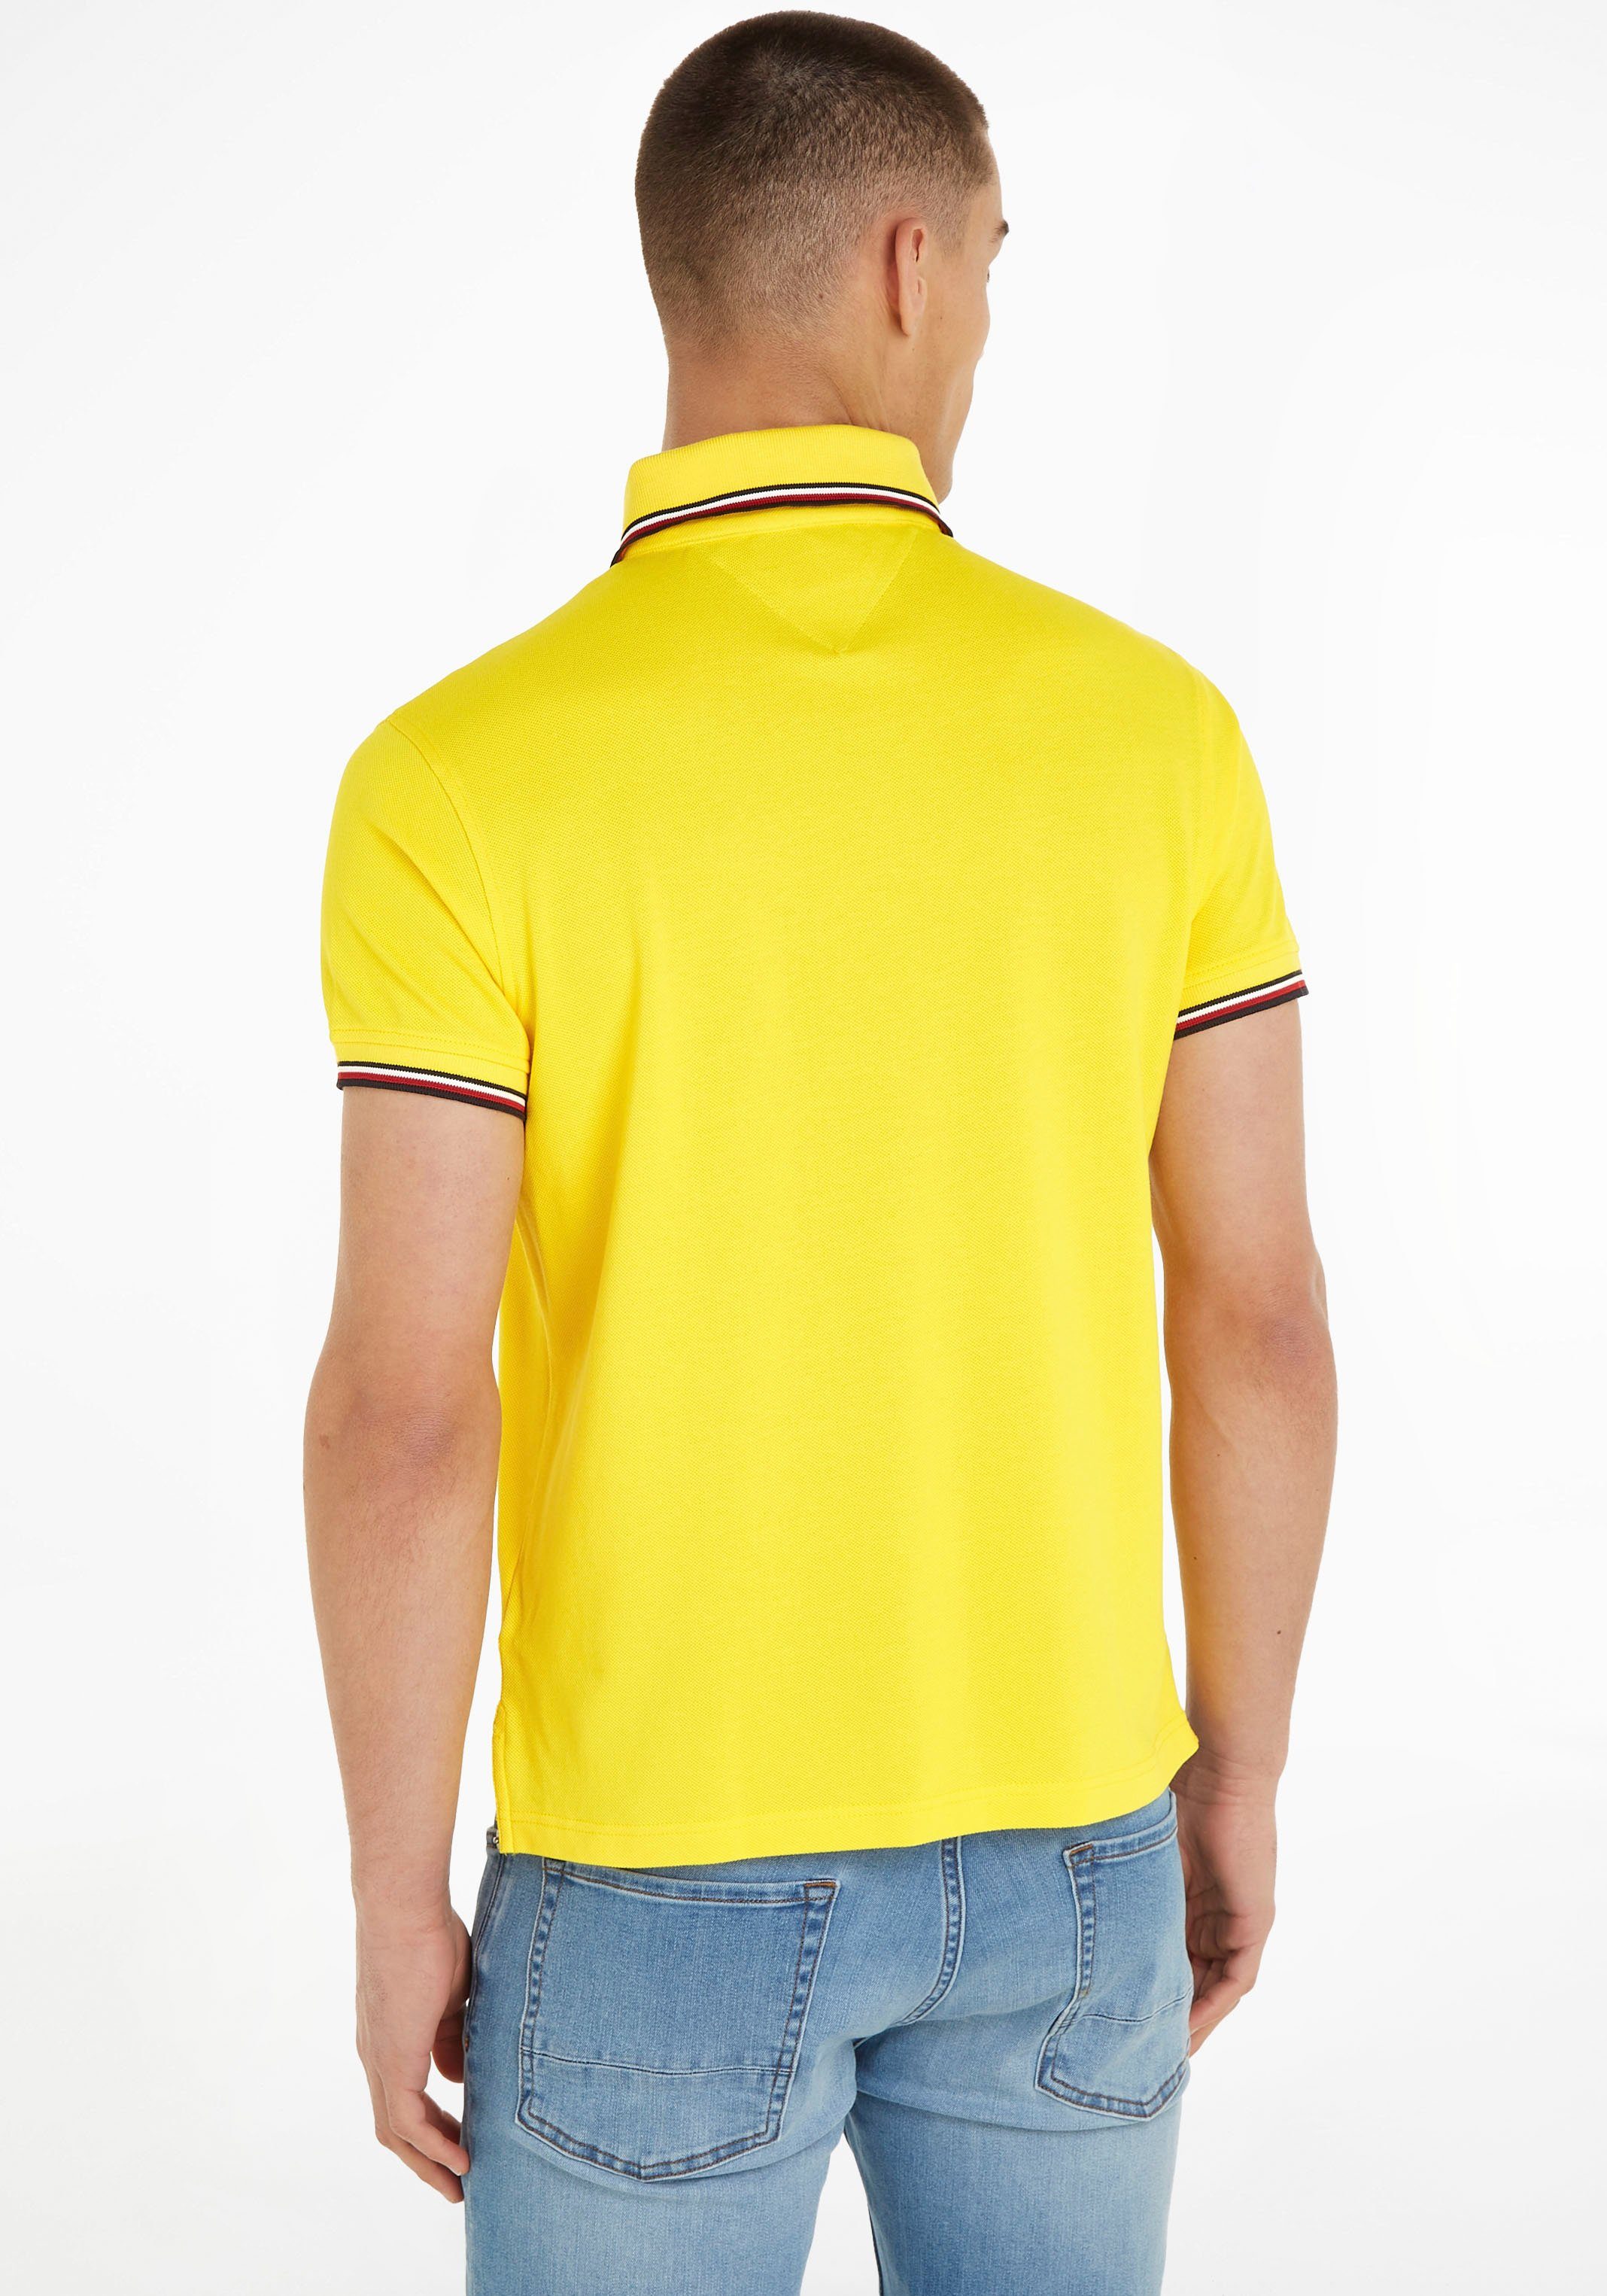 Tommy Hilfiger Poloshirt 1985 yellow mit TIPPED Kragen und POLO TH-Farben SLIM Ärmel an RWB